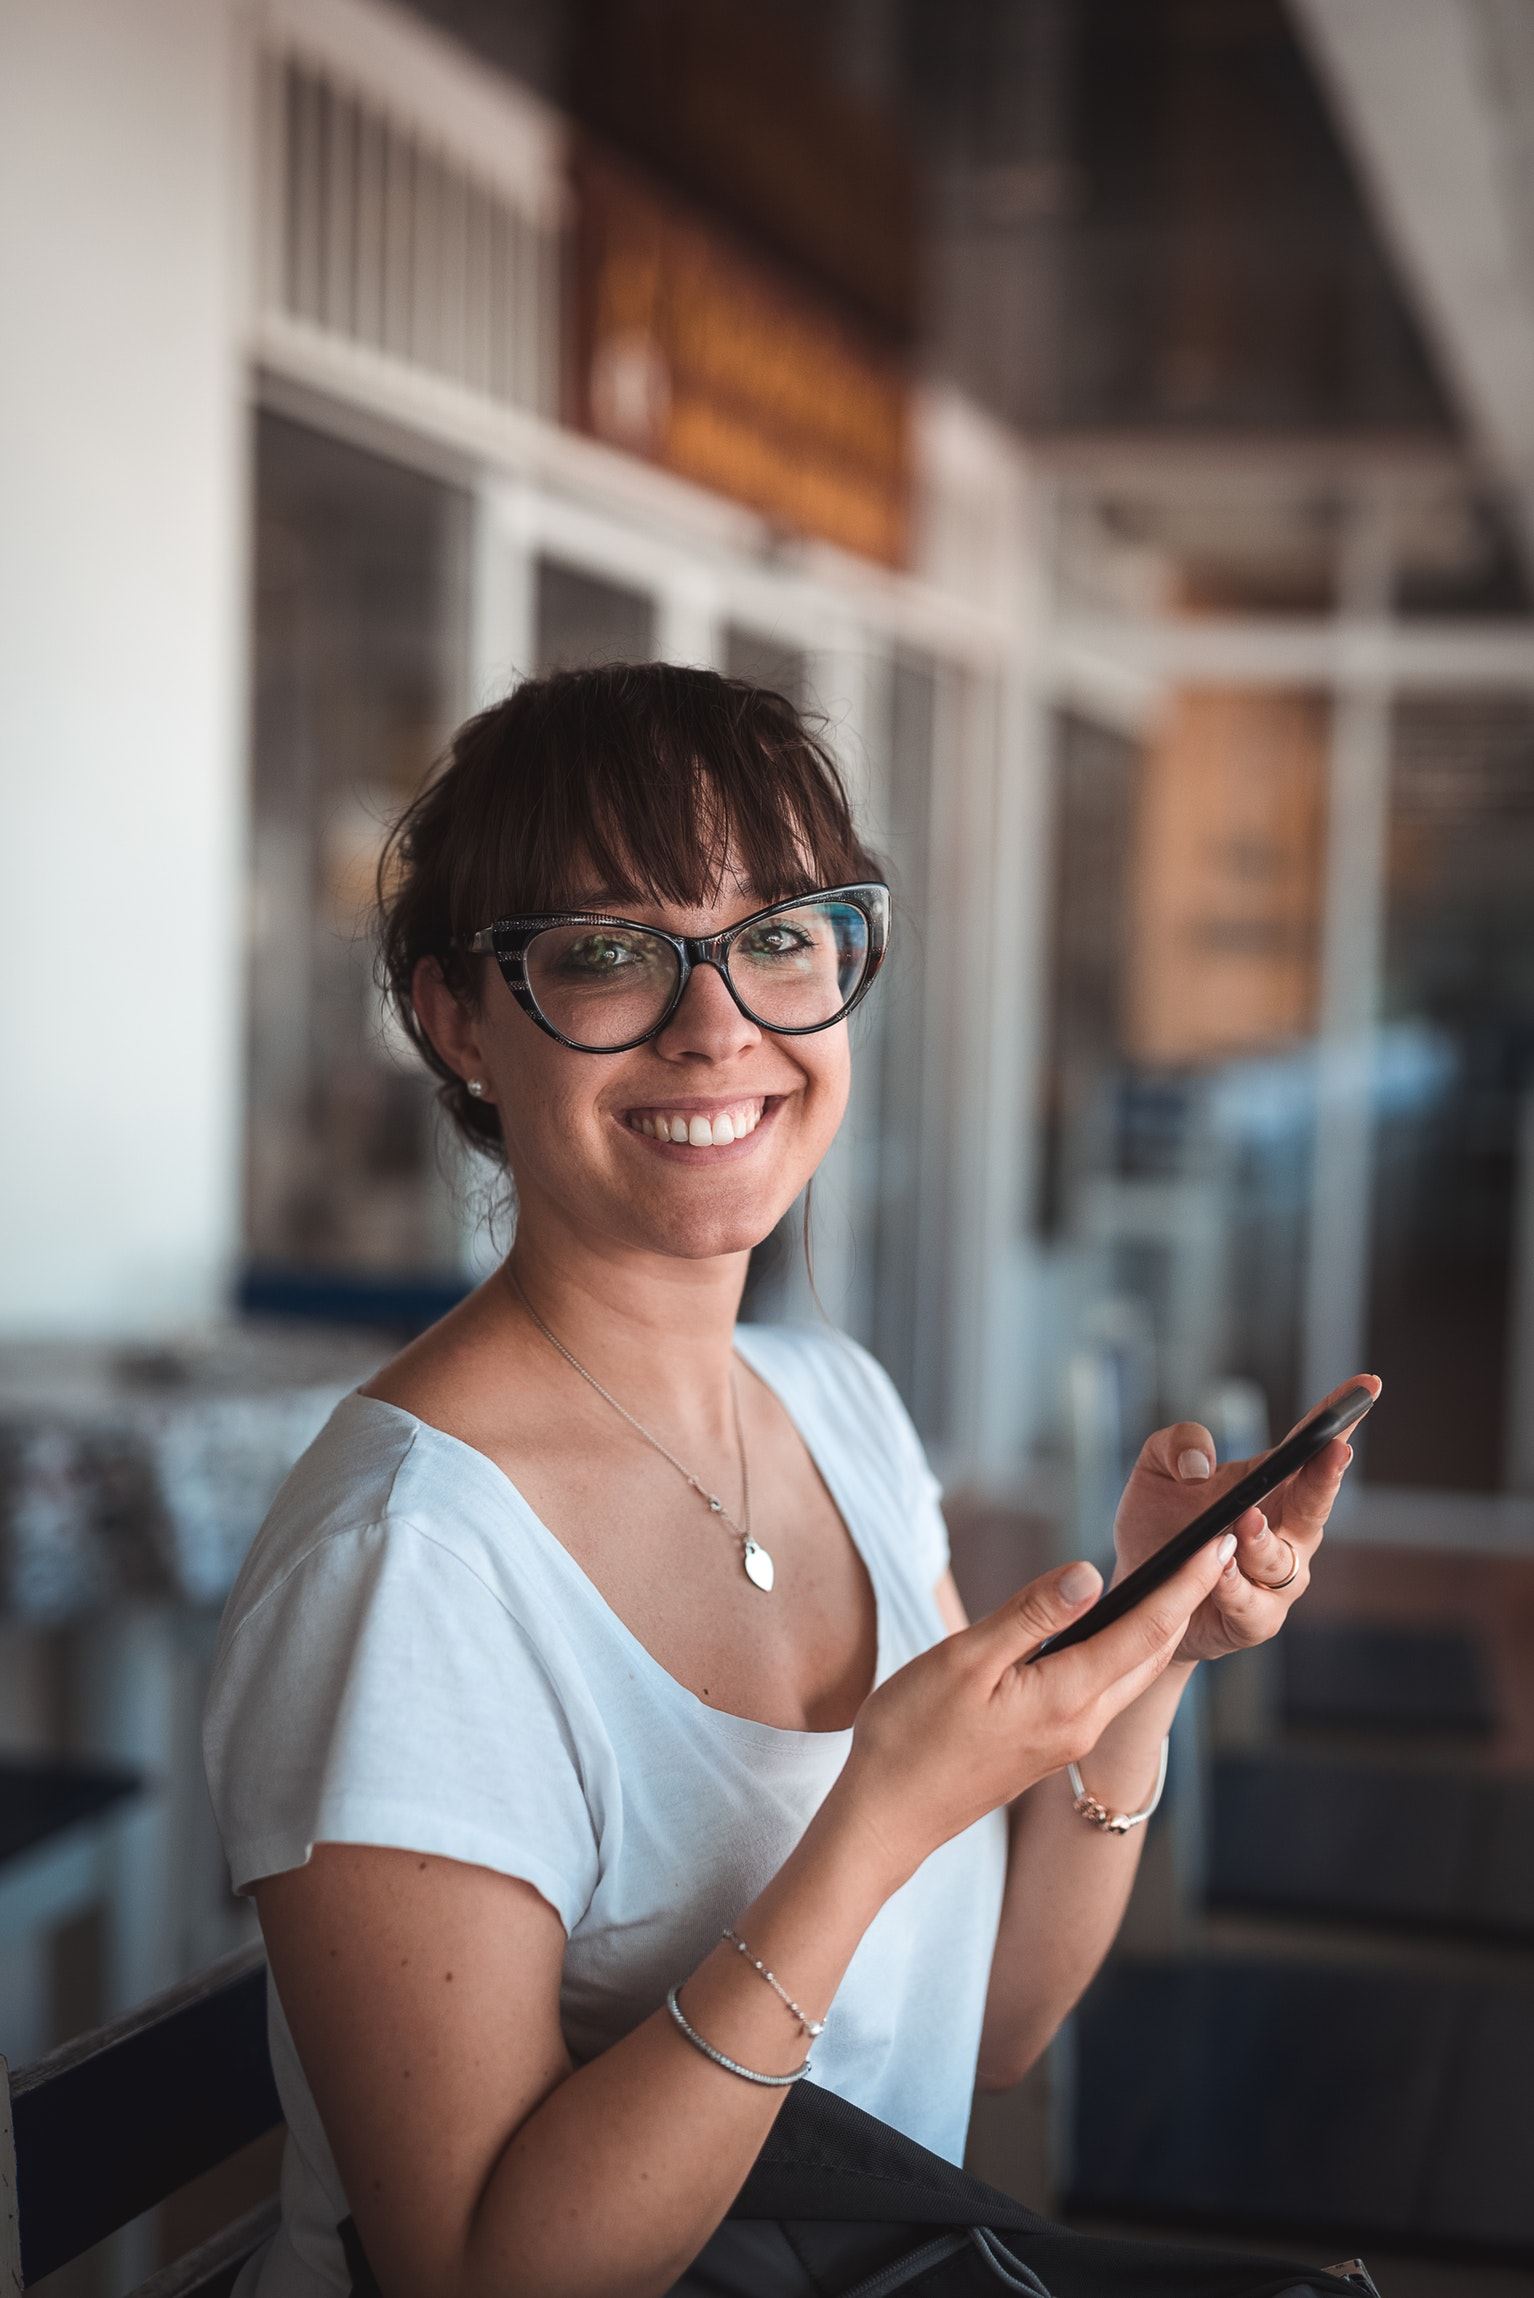 Vrouw met een grote bril heeft haar telefoon in haar hand en lacht in de camera.